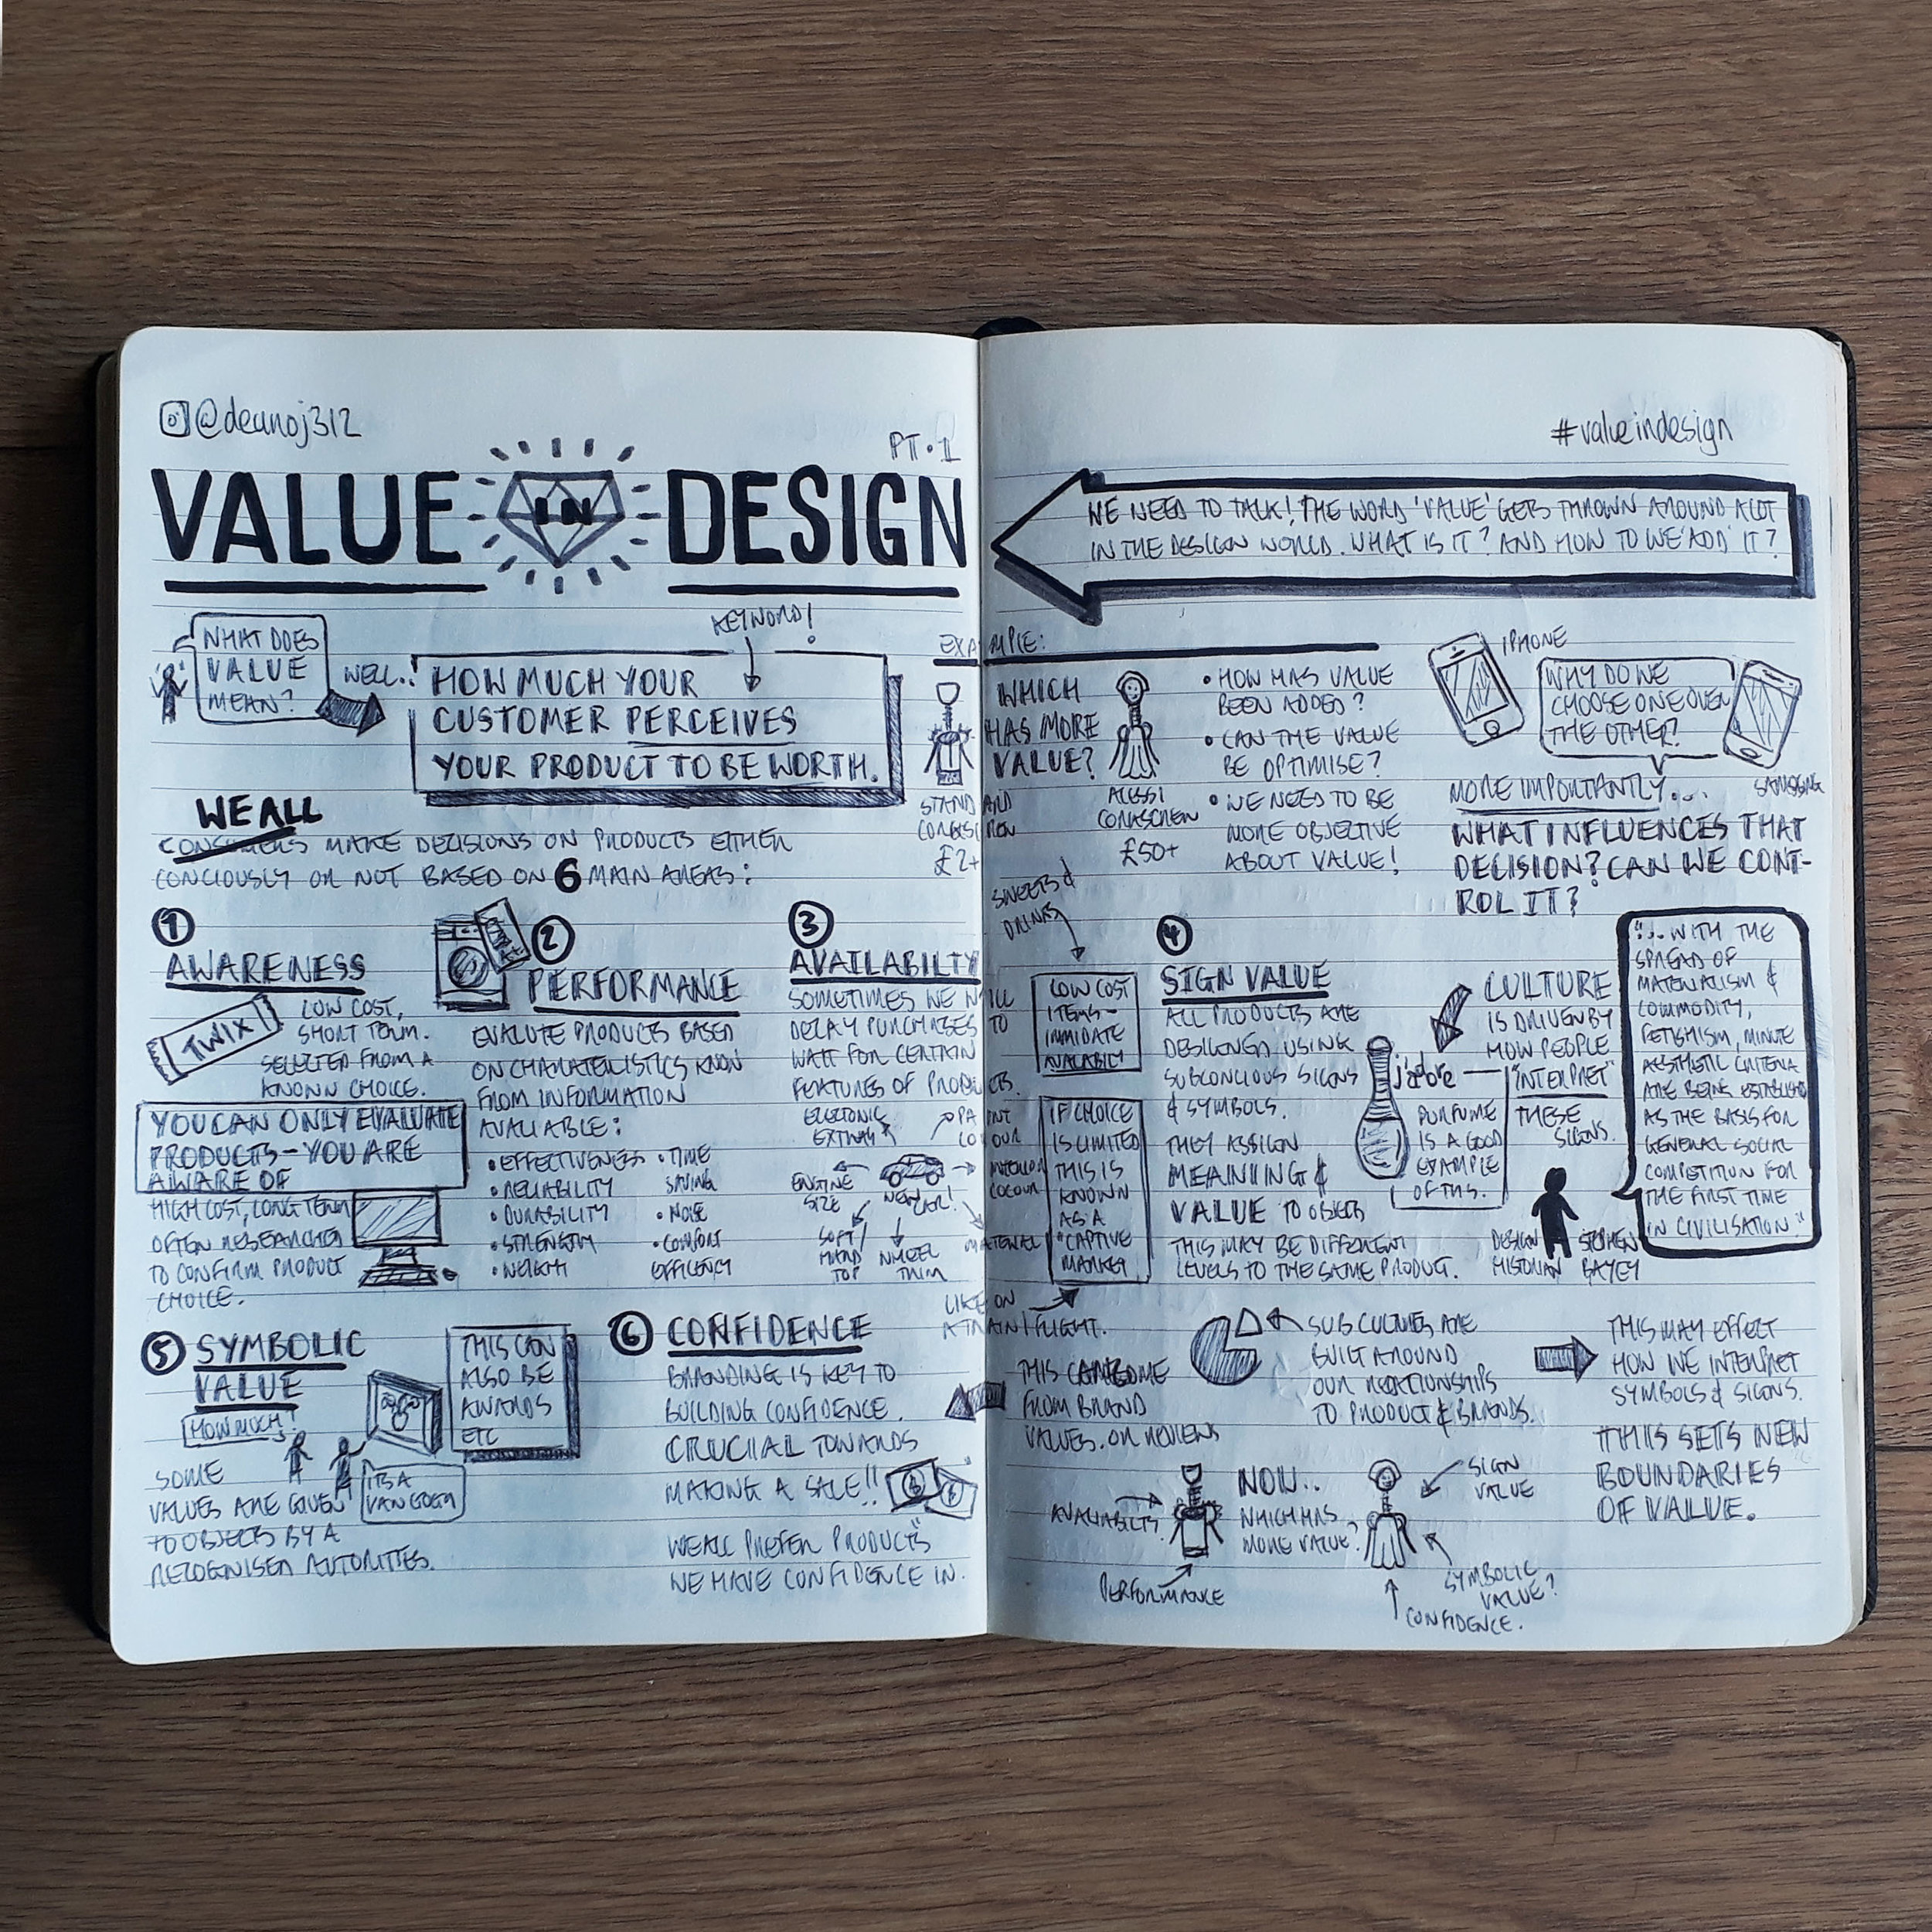 ValueInDesign-Part1.1.jpg